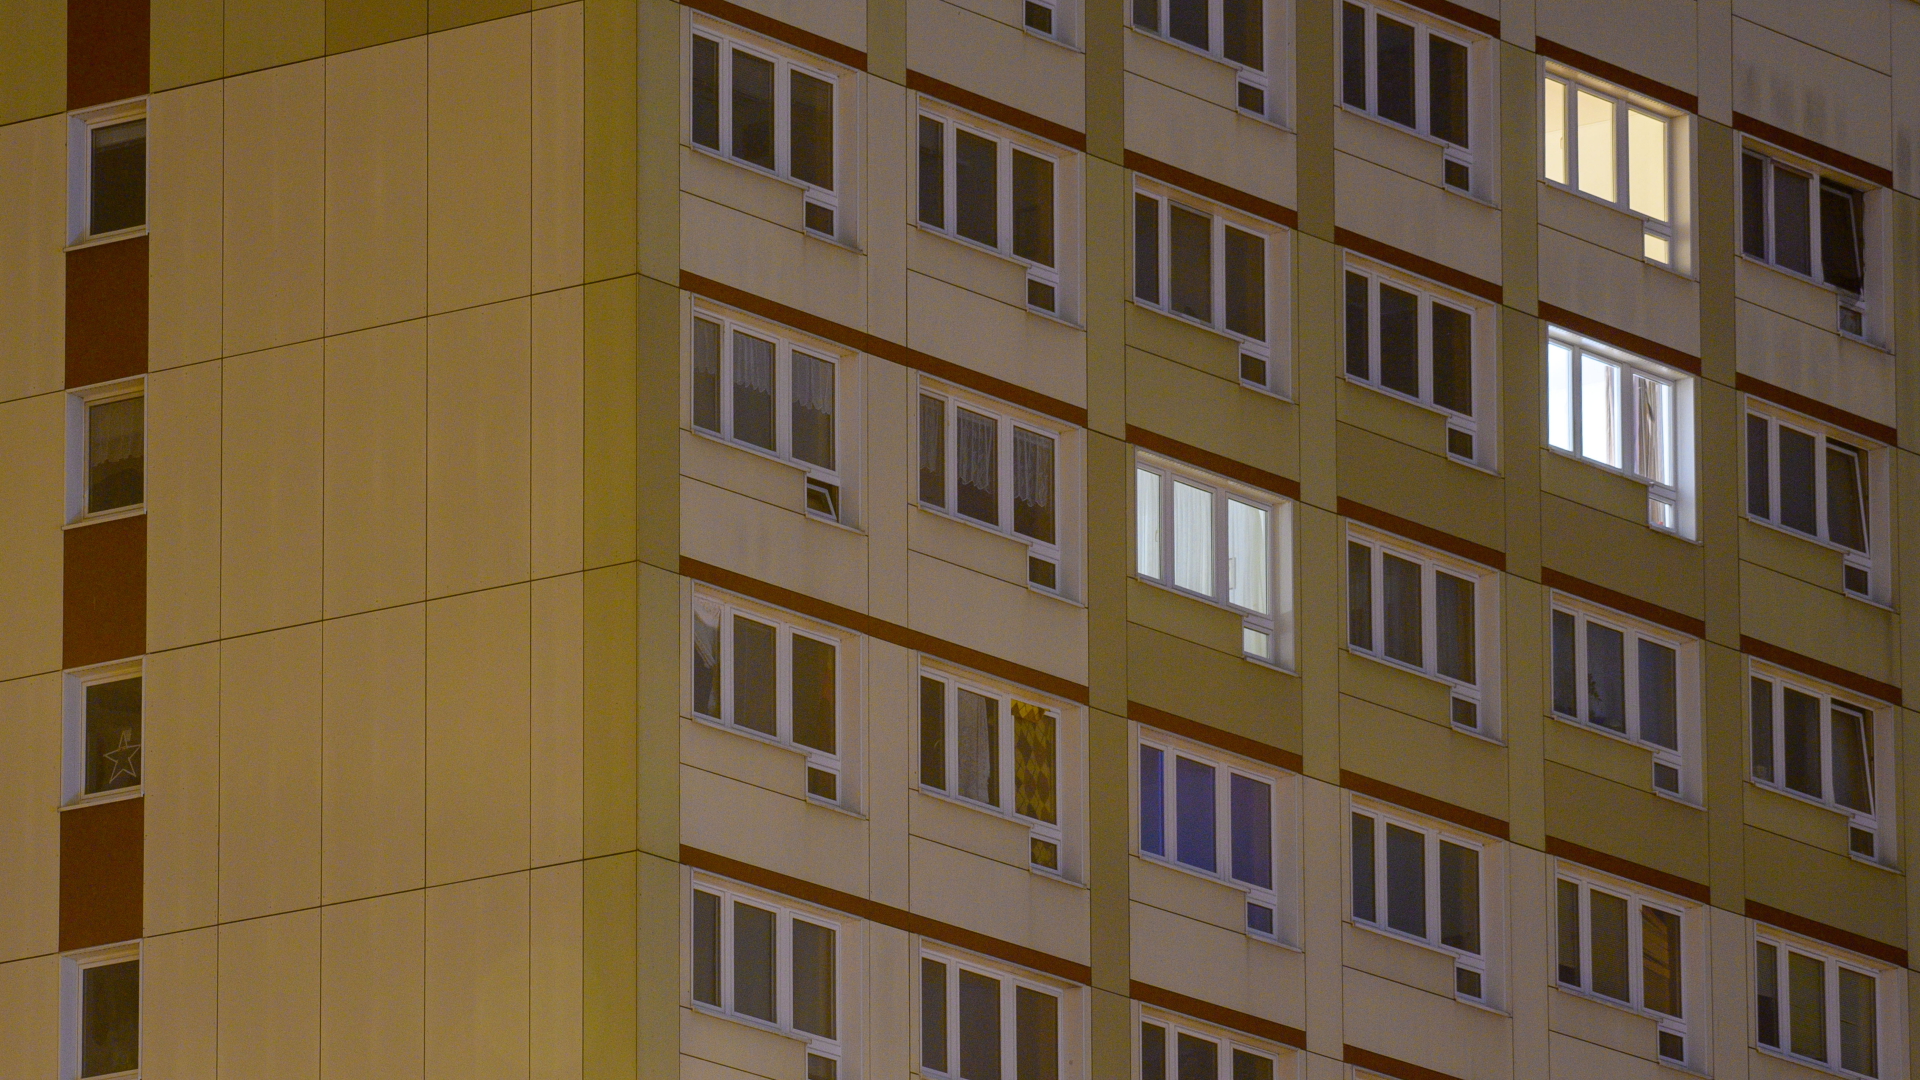 Vereinzelt brennen Lichter in den Fenstern eines Hochhauses.